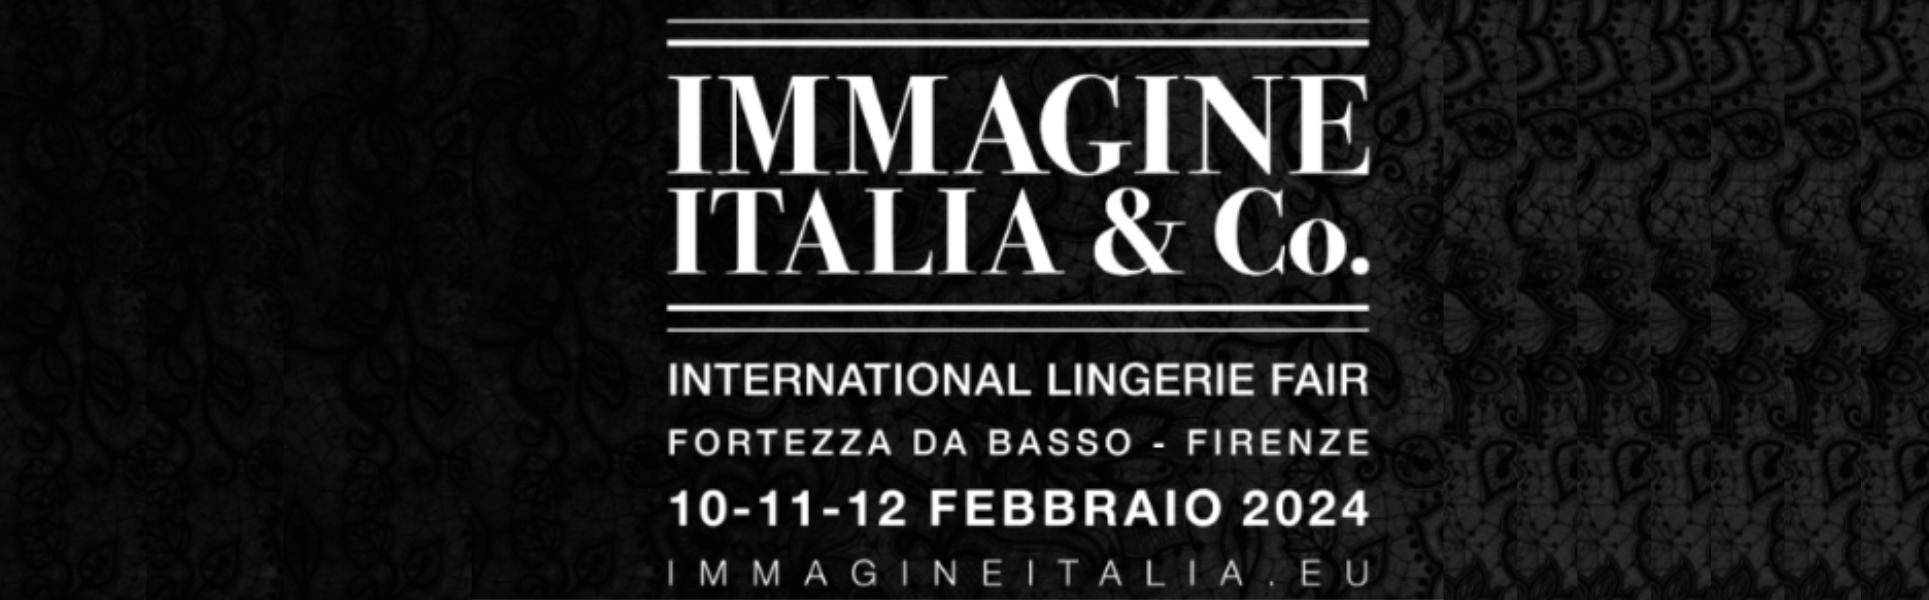 Immagine Italia & Co by Underbeach: evento carbon neutral